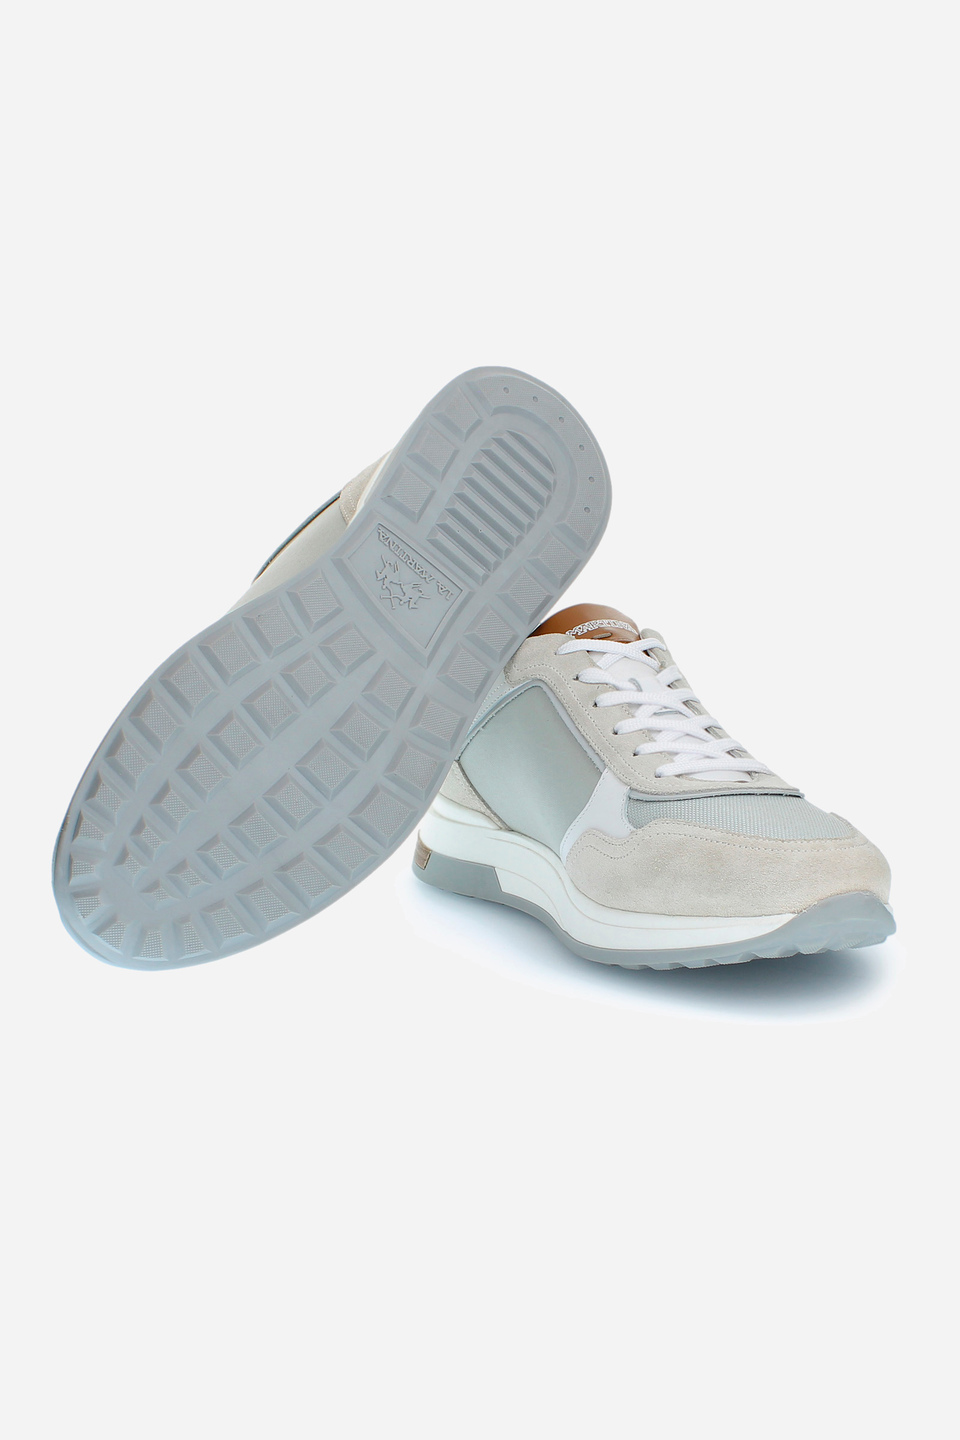 Herren-Sneaker mit erhöhter Sohle aus Canvas und Wildleder | La Martina - Official Online Shop